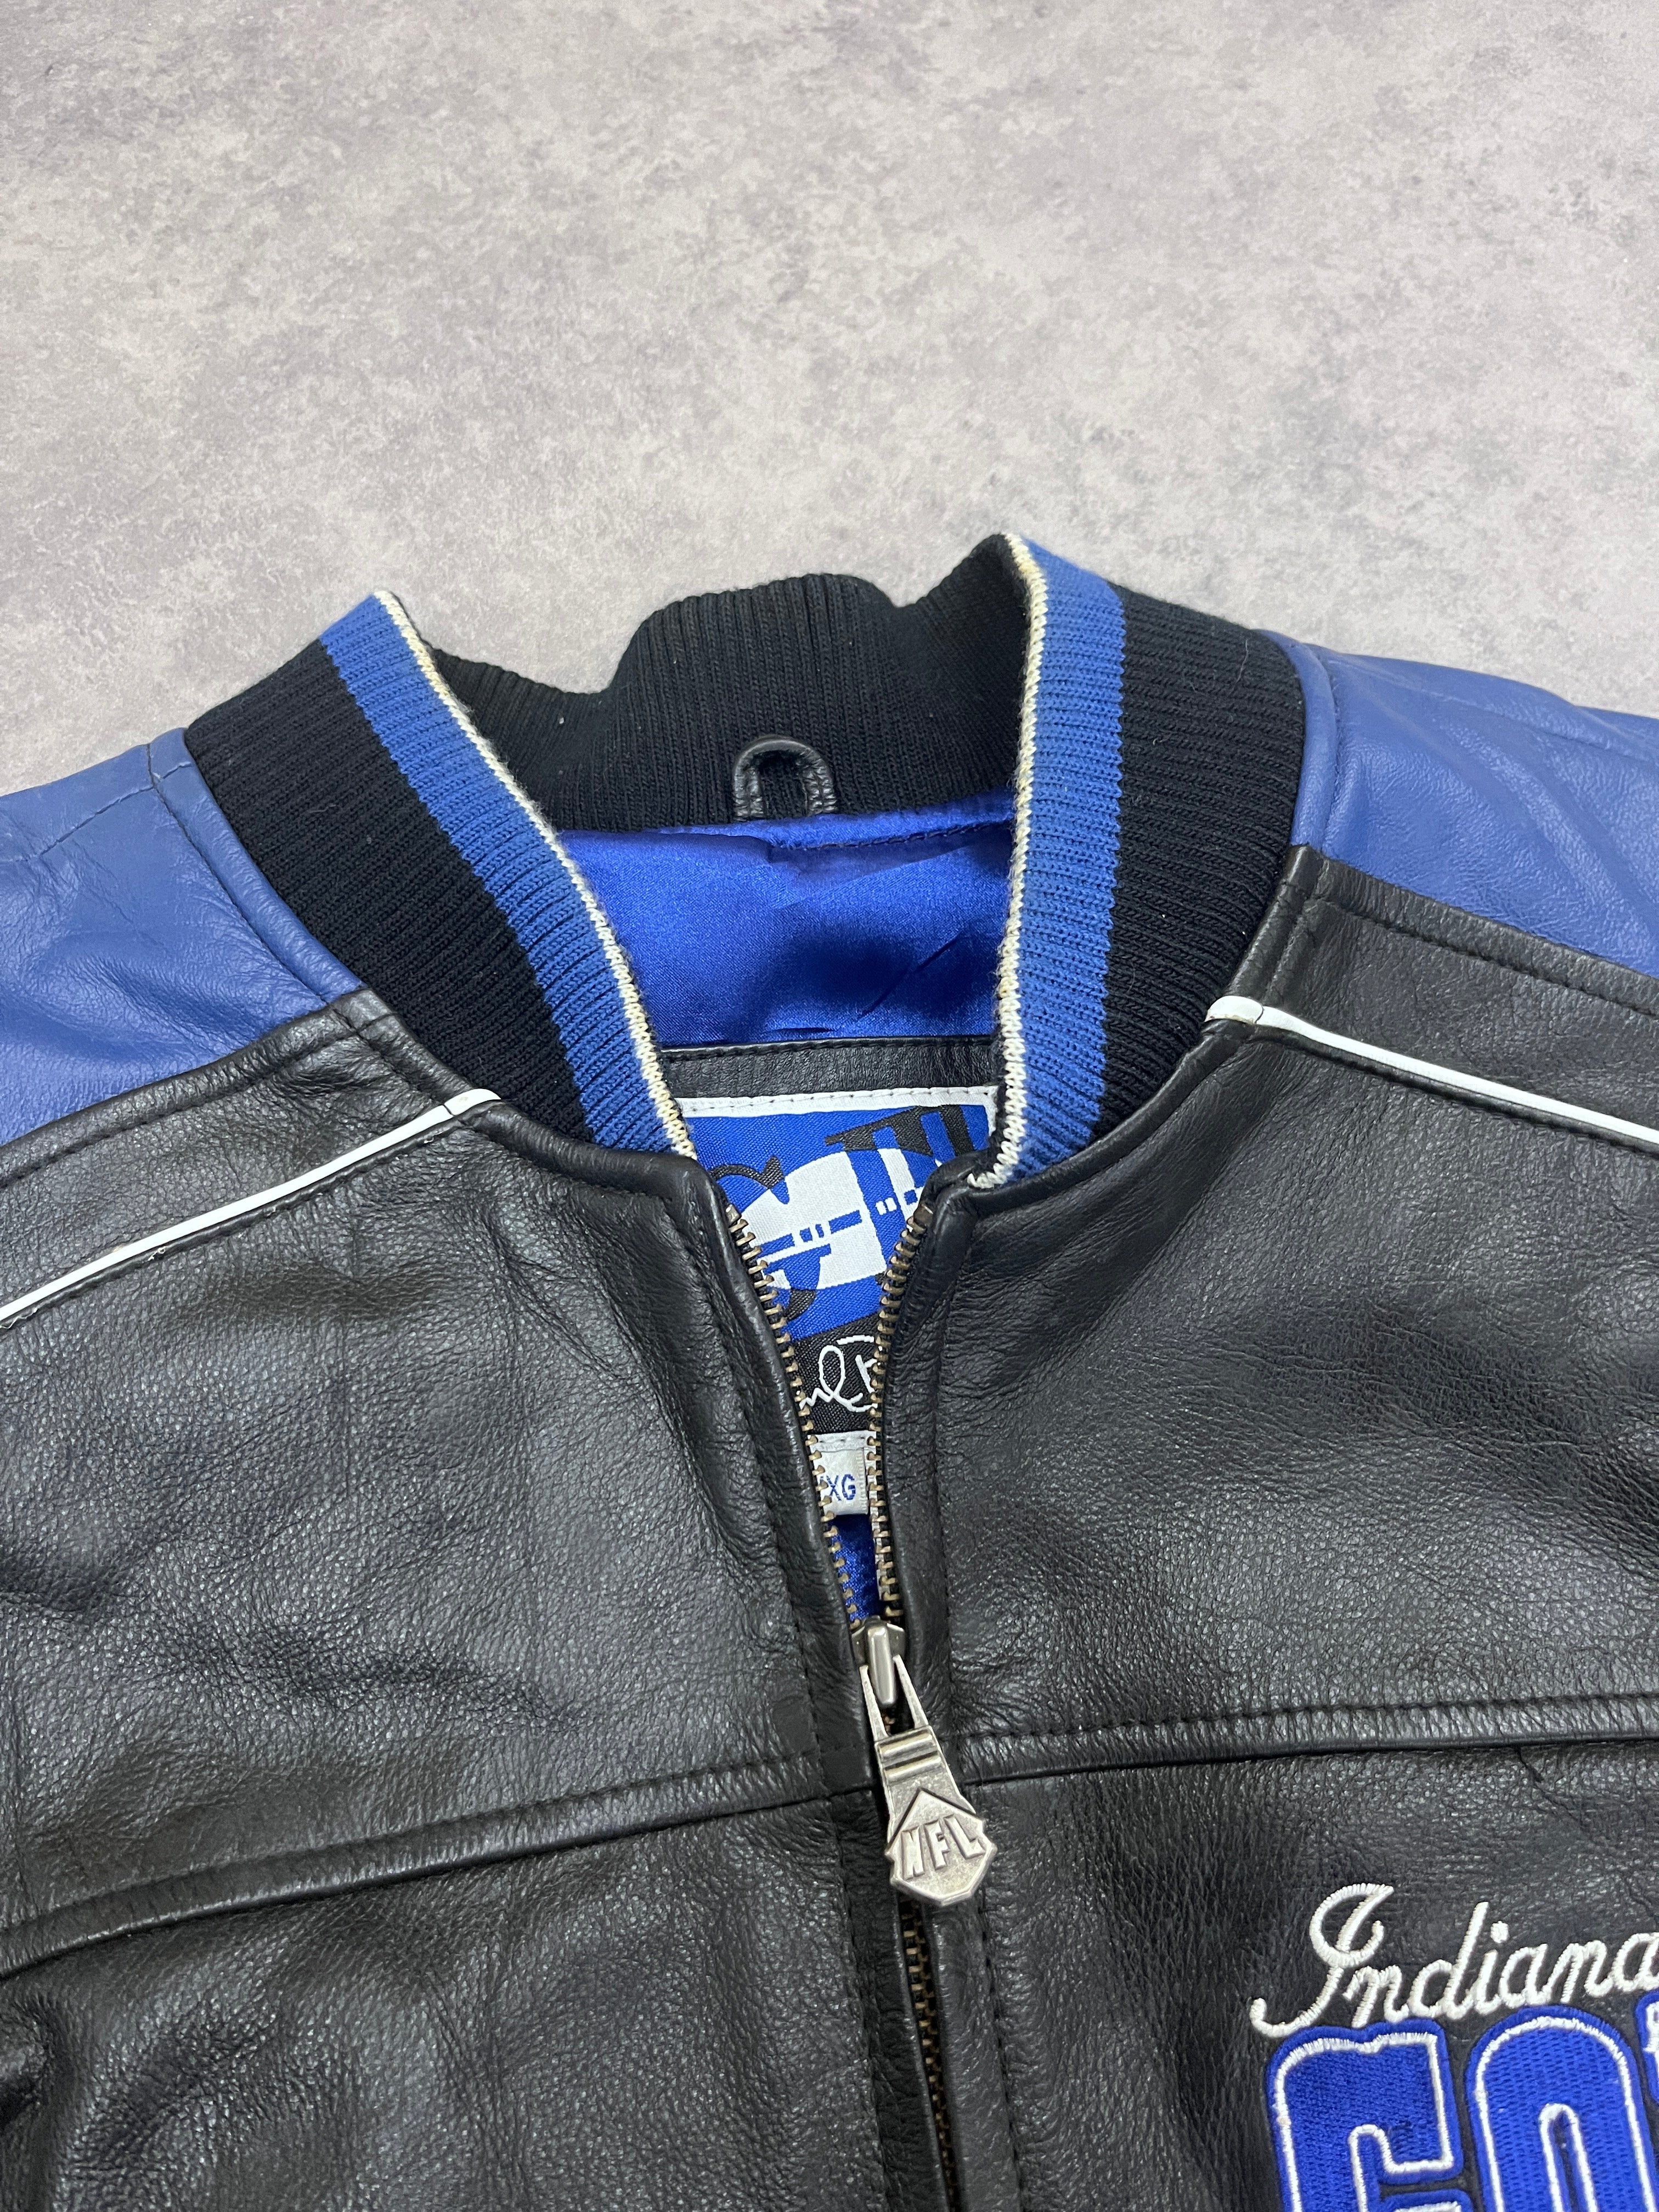 Vintage Colts Varsity Jacket Leather Blue // Large - RHAGHOUSE VINTAGE